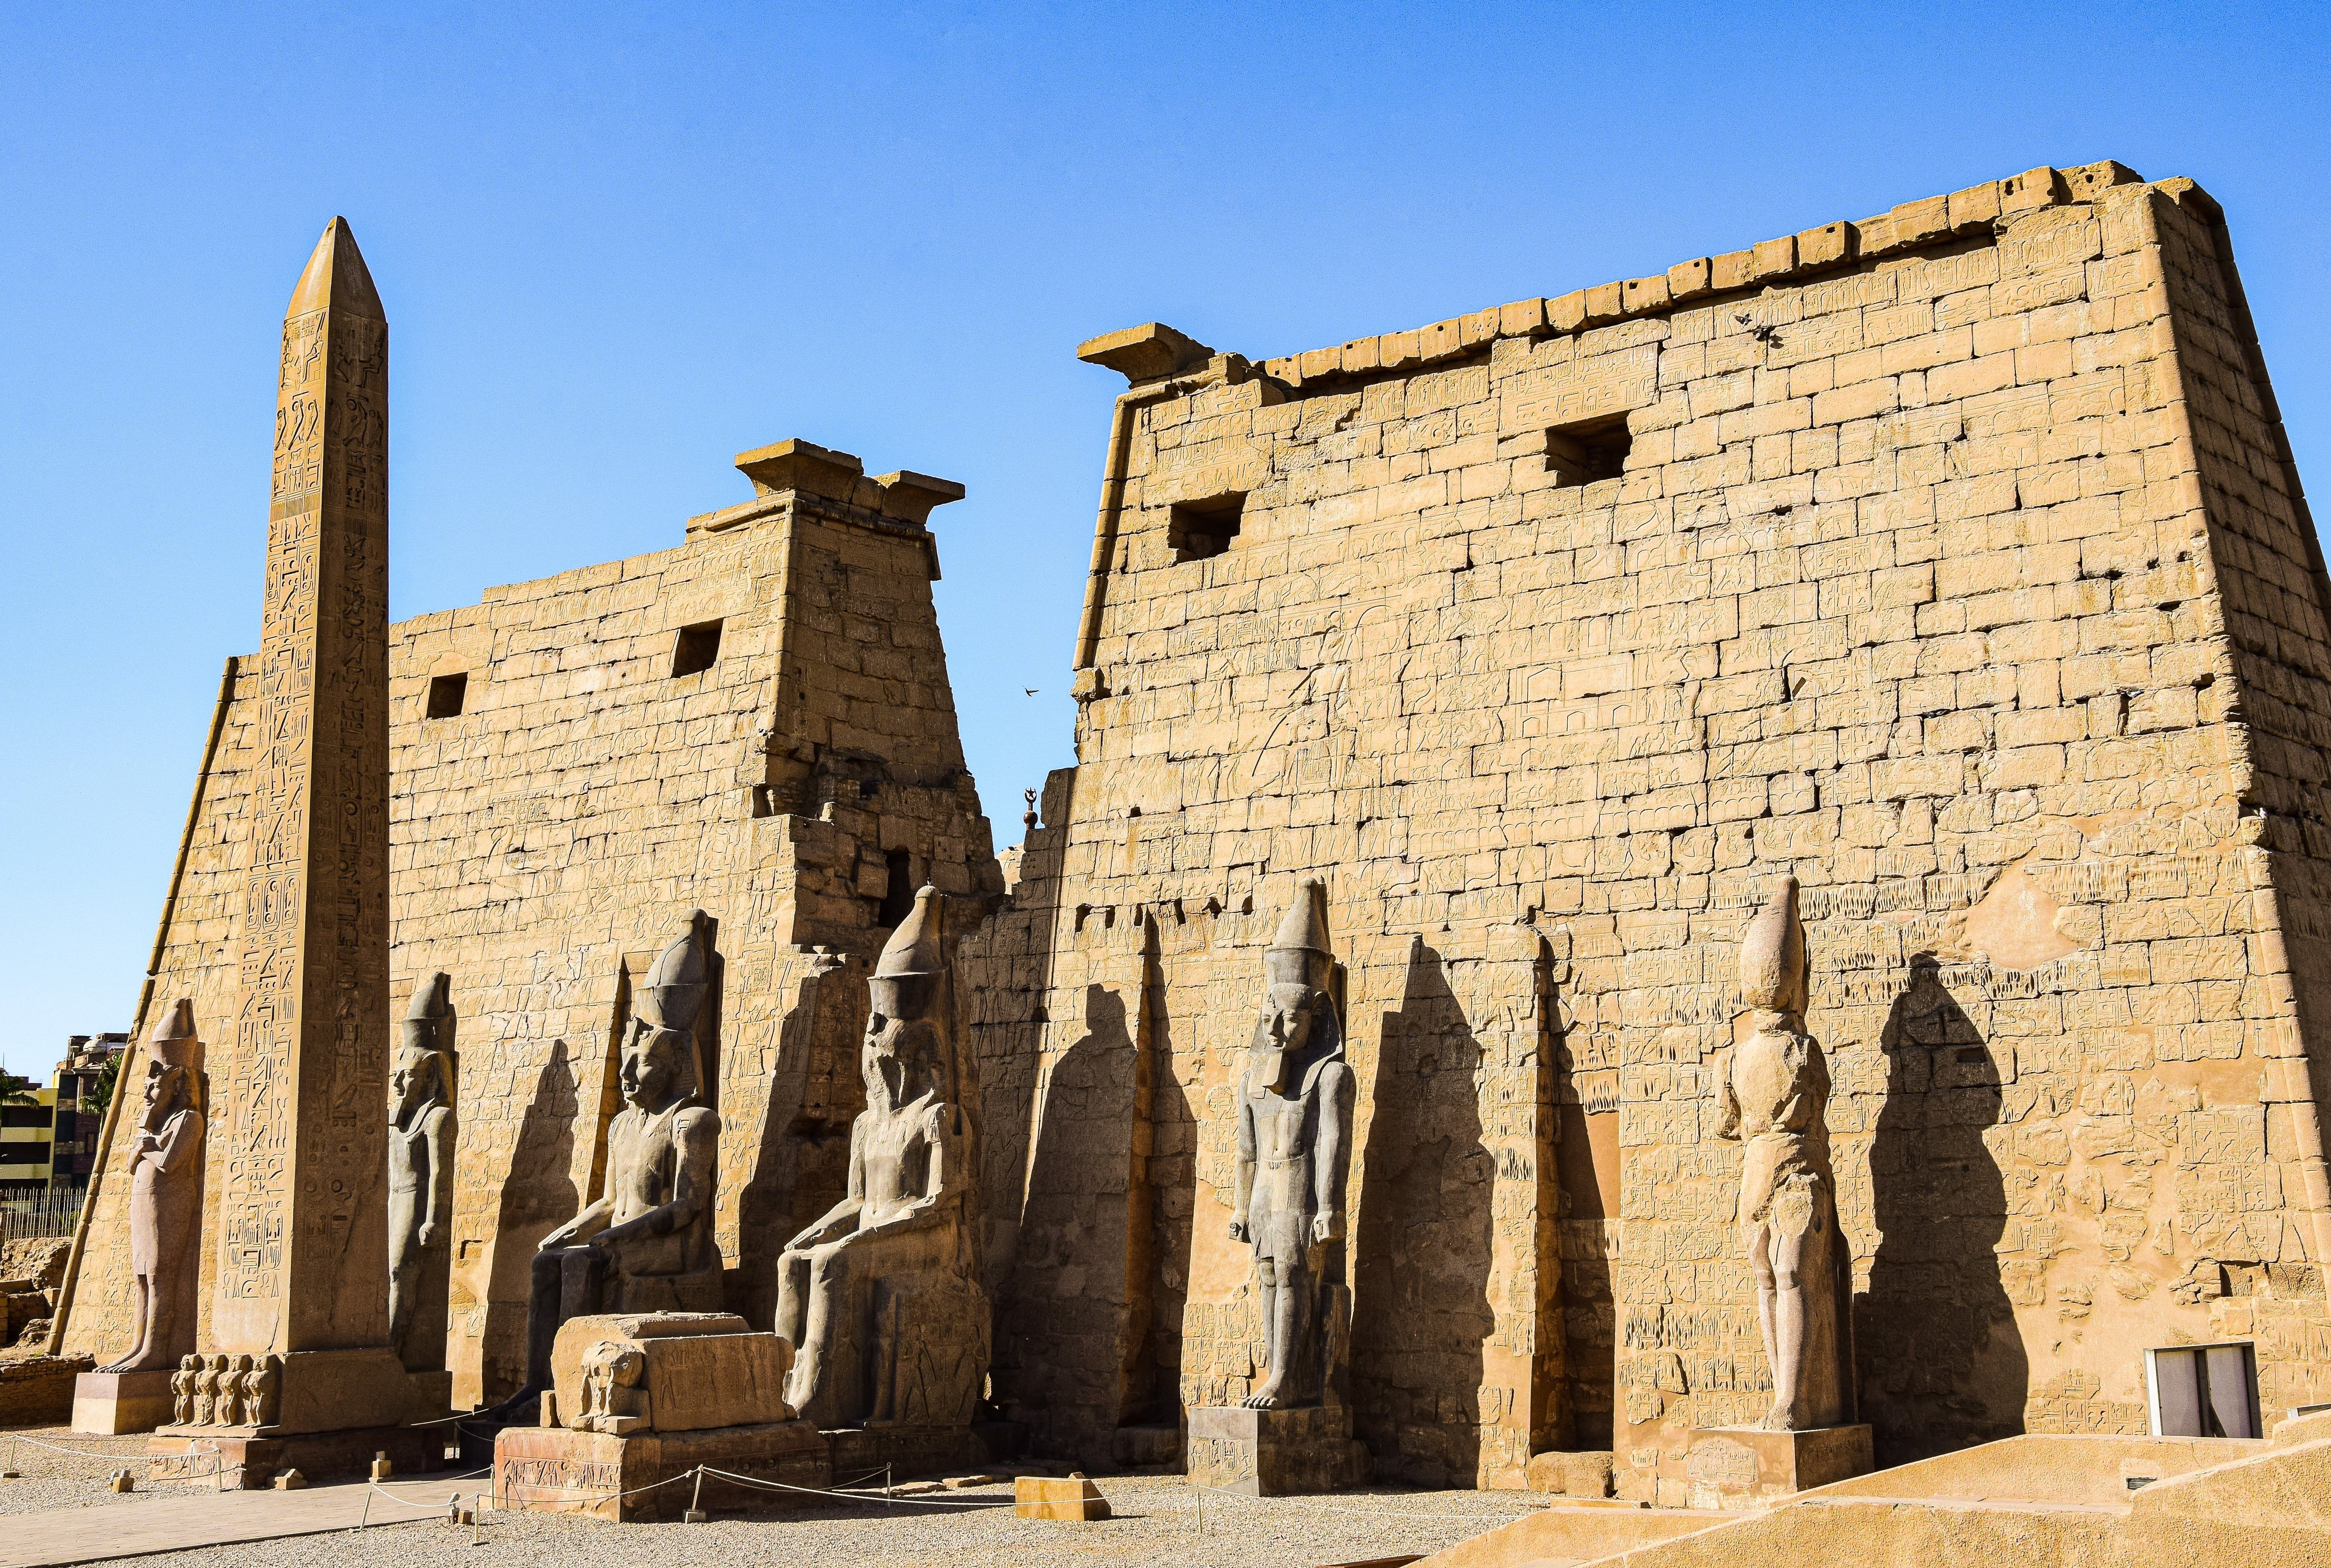 De Luxortempel: een van de belangrijkste tempels van Egypte